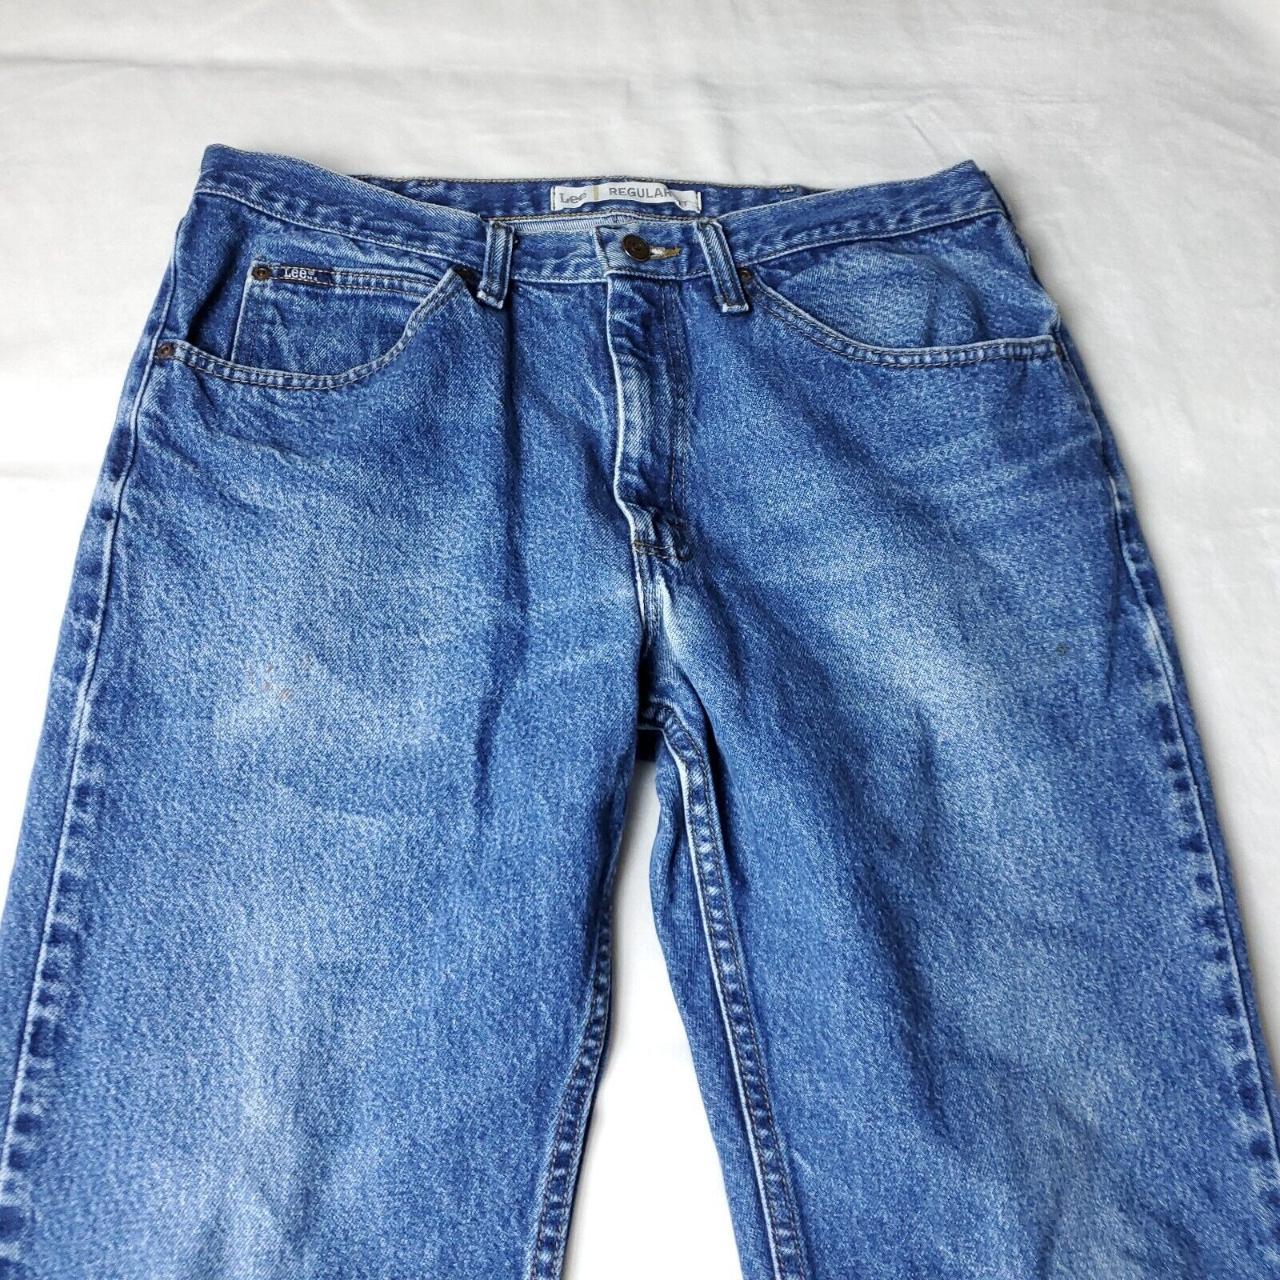 Lee Regular Fit Denim Jeans Mens Size 33x29... - Depop